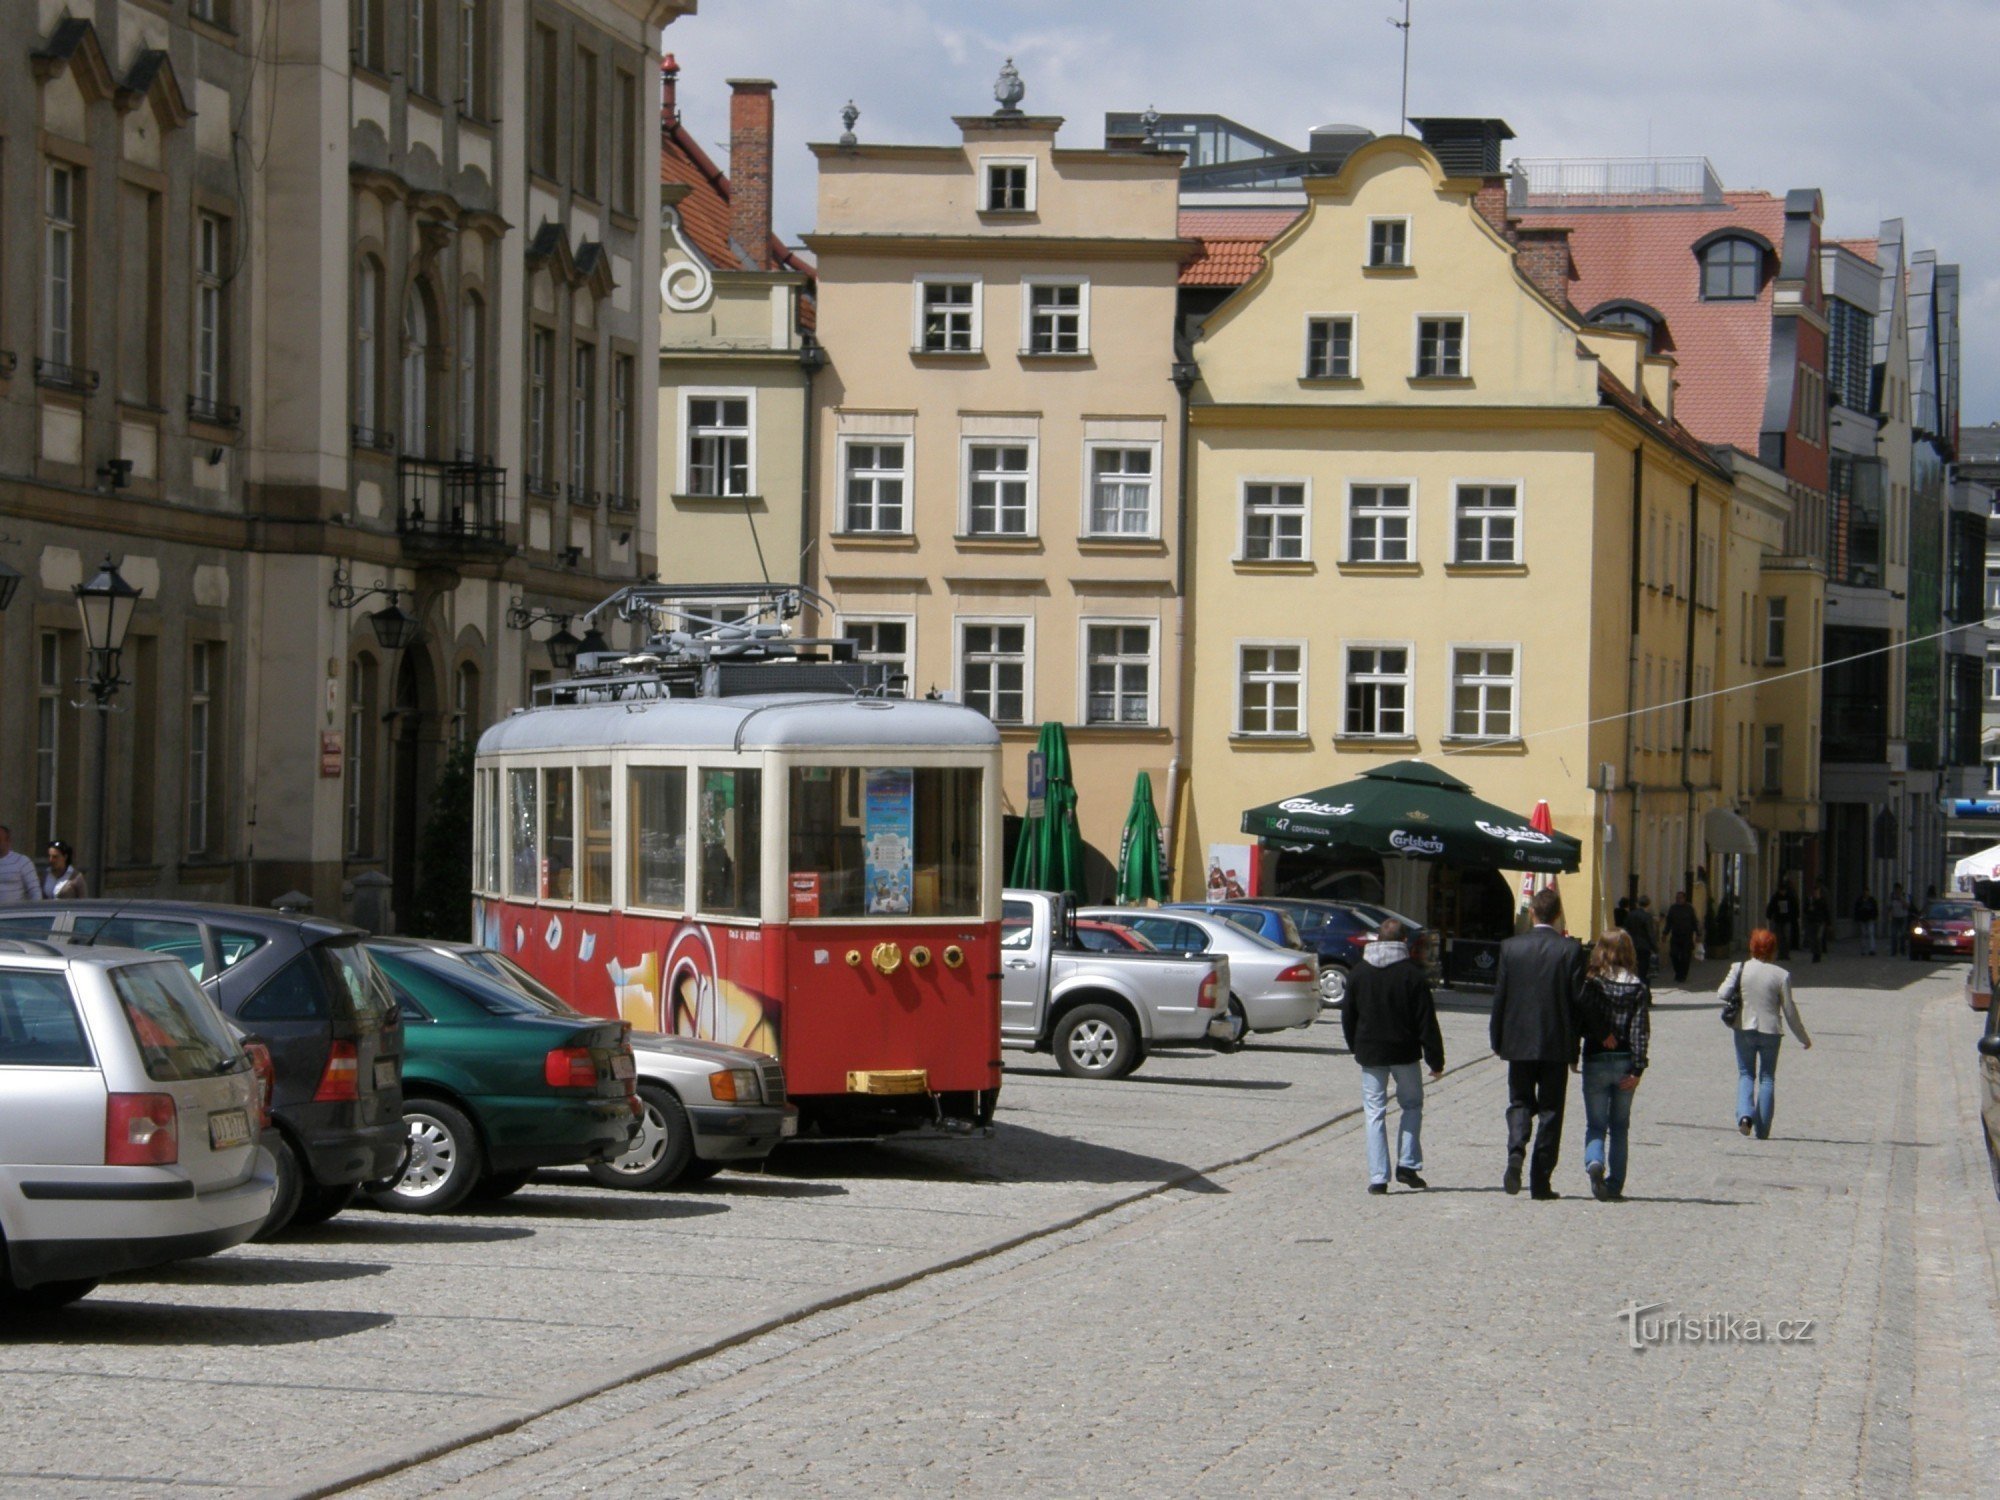 Трамваї в J.Góra закінчувалися о 8. років минулого століття